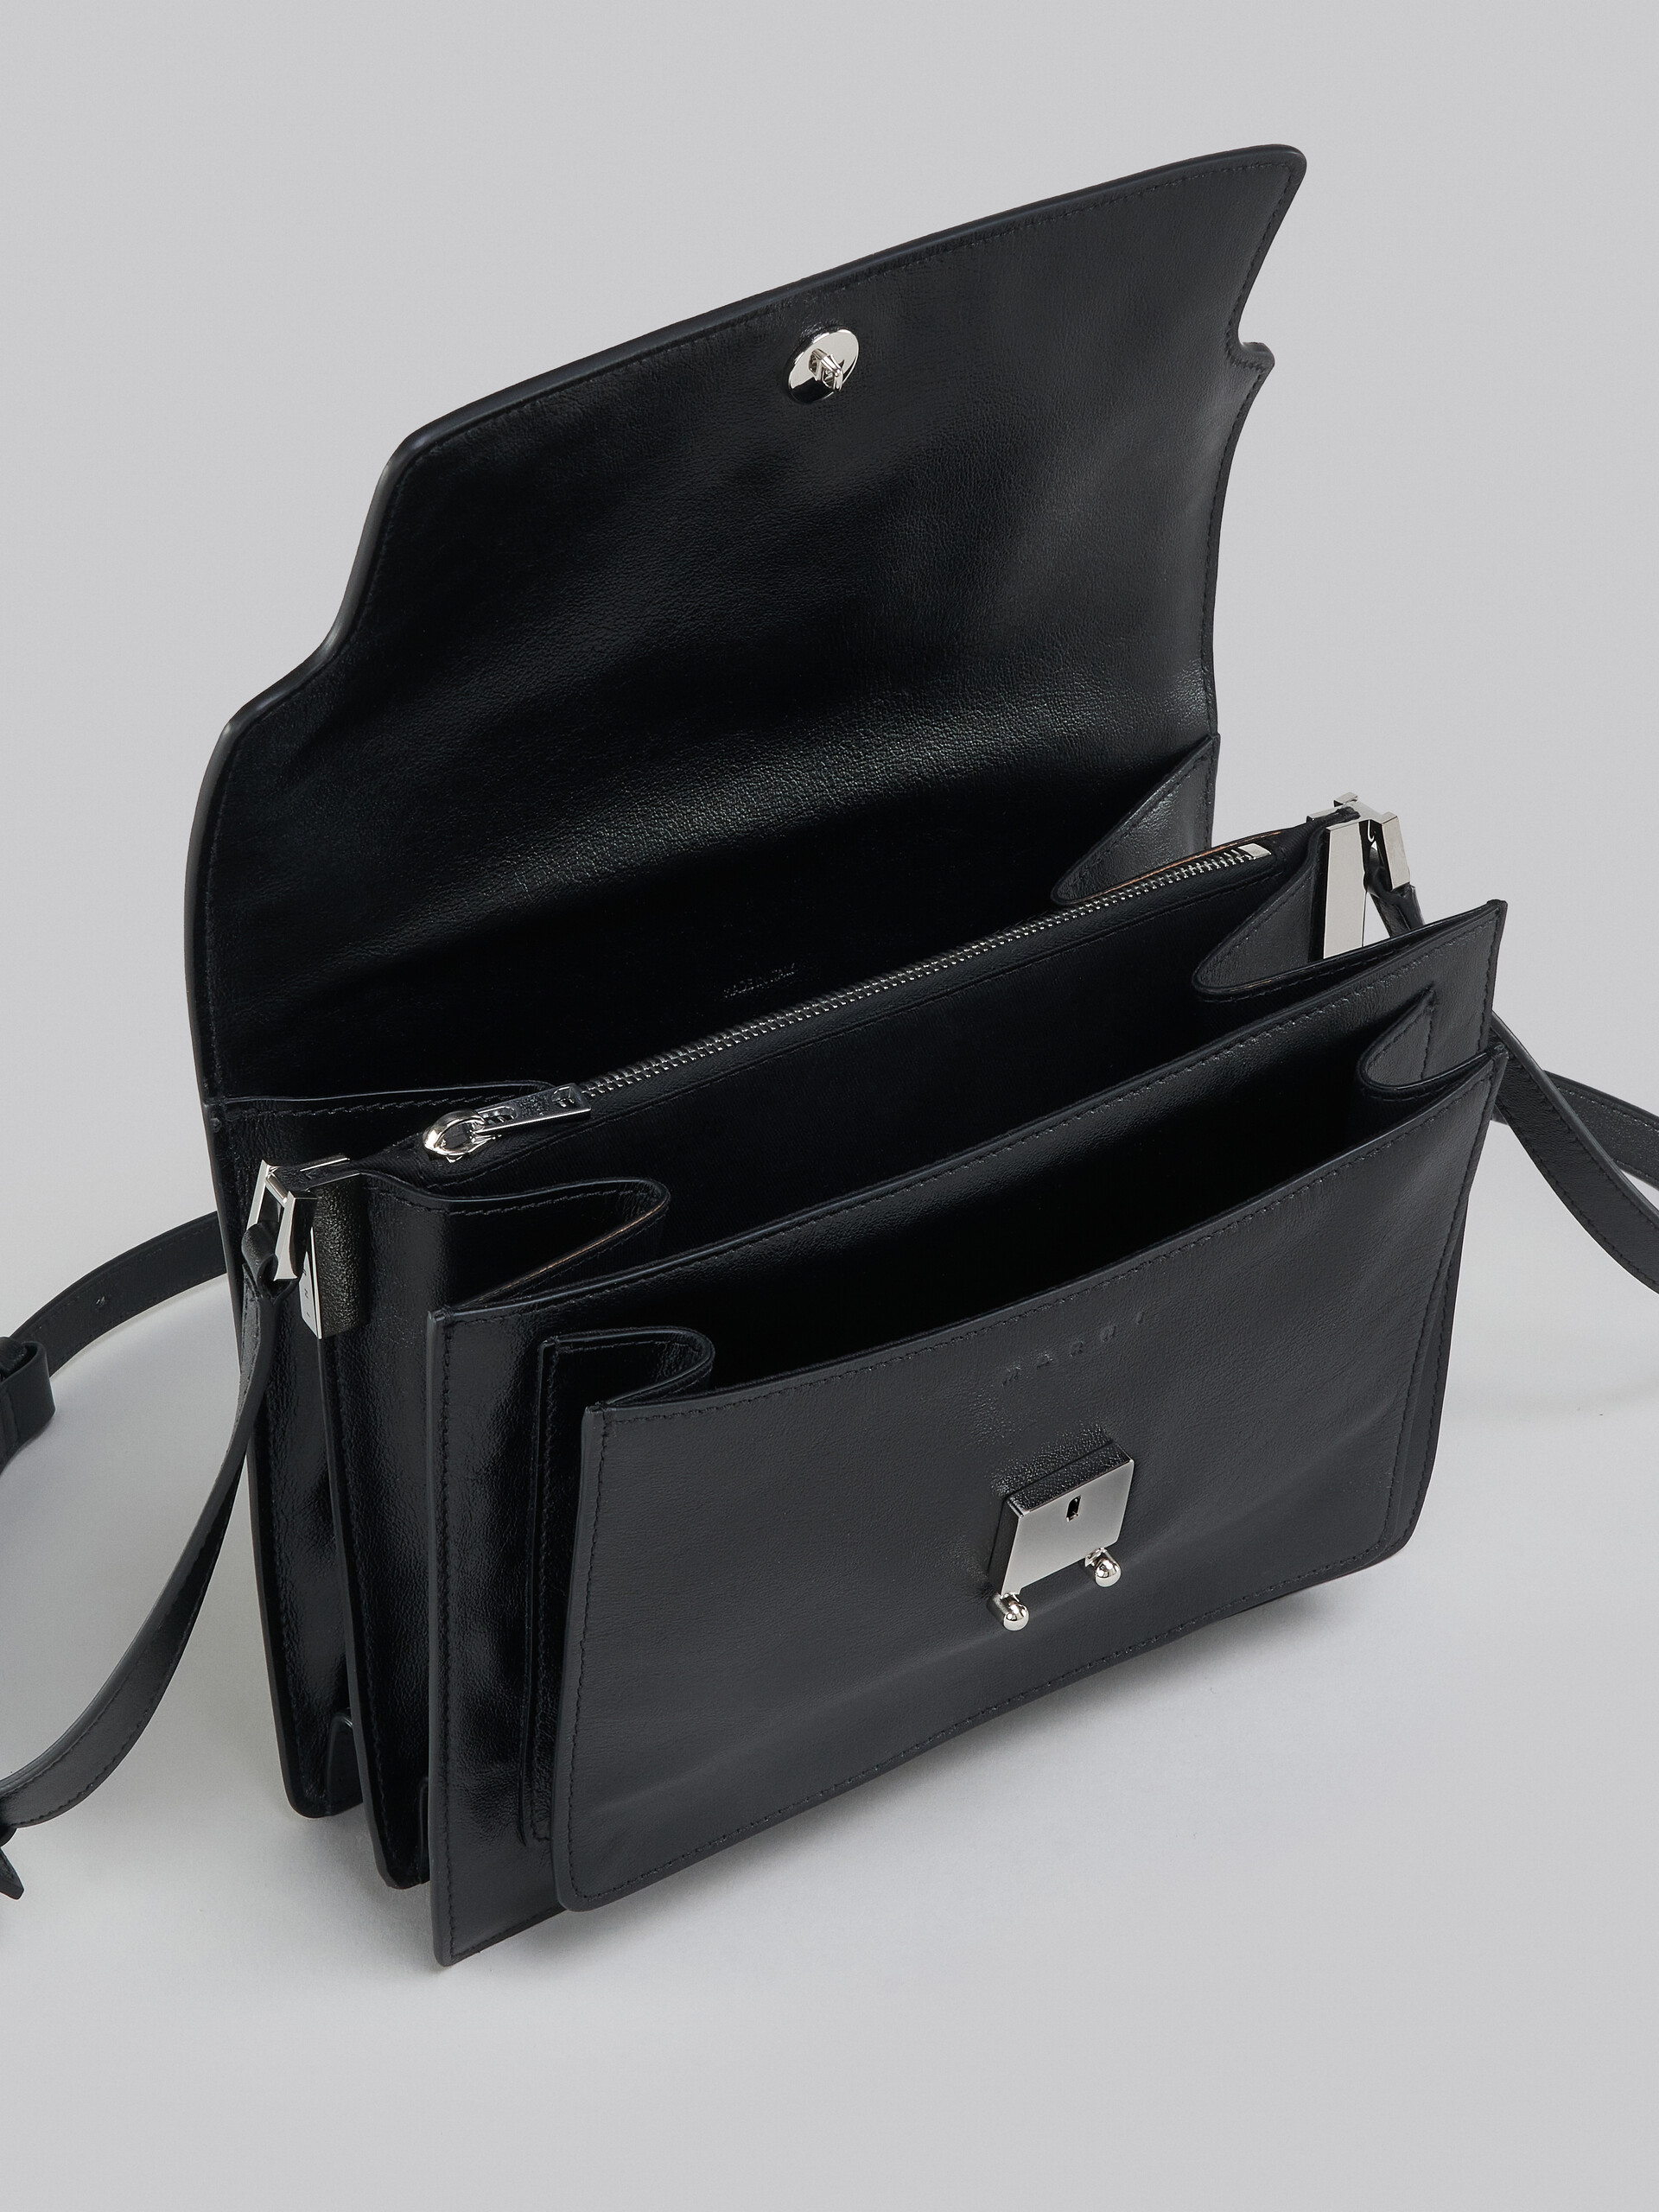 Grand sac Trunk Soft en cuir noir - Sacs portés épaule - Image 4